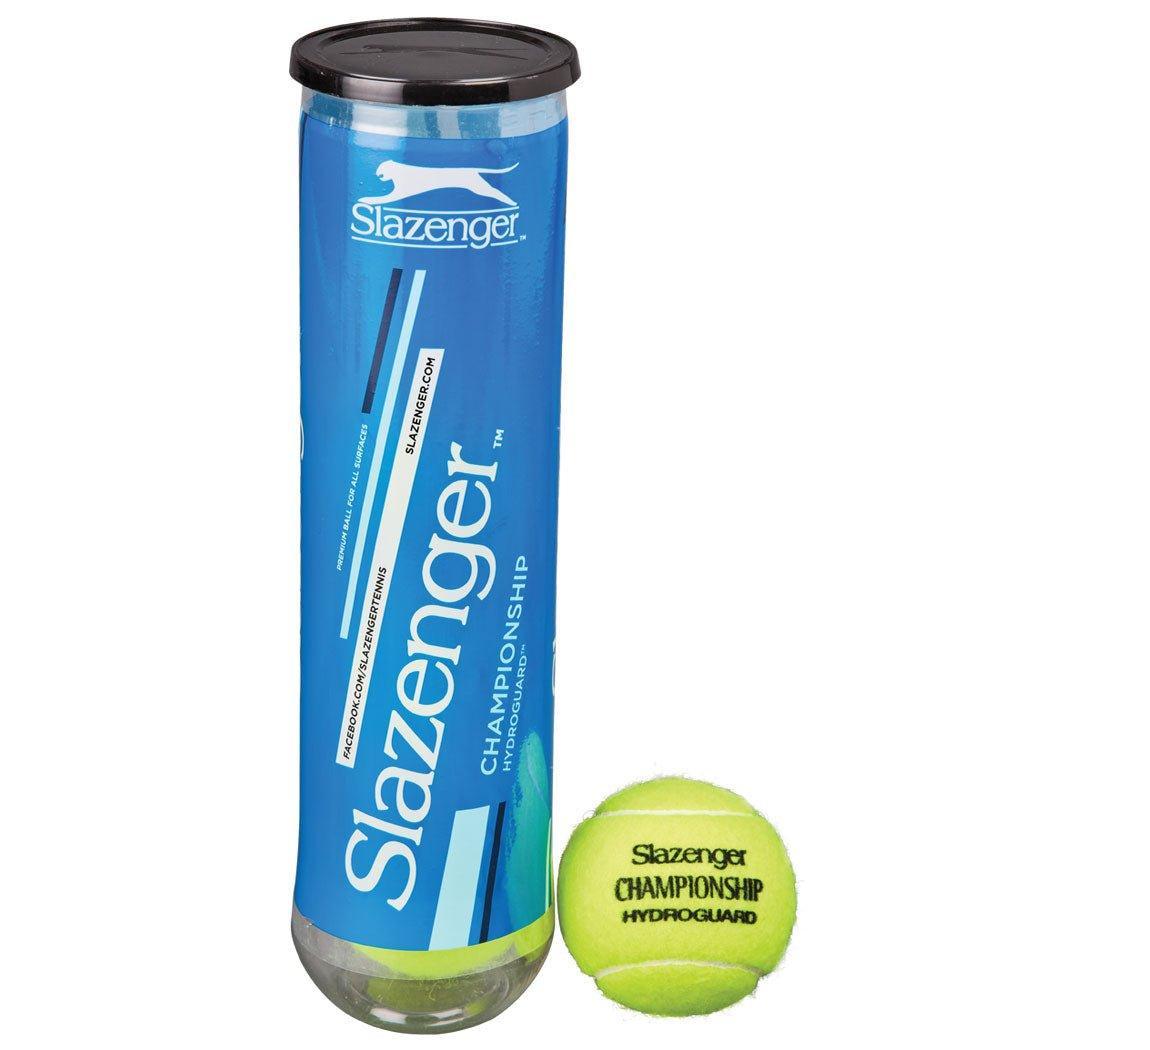 Slazenger Wimbledon Championship Hydroguard Tennis Ball - 4 Ball - Bassline Retail